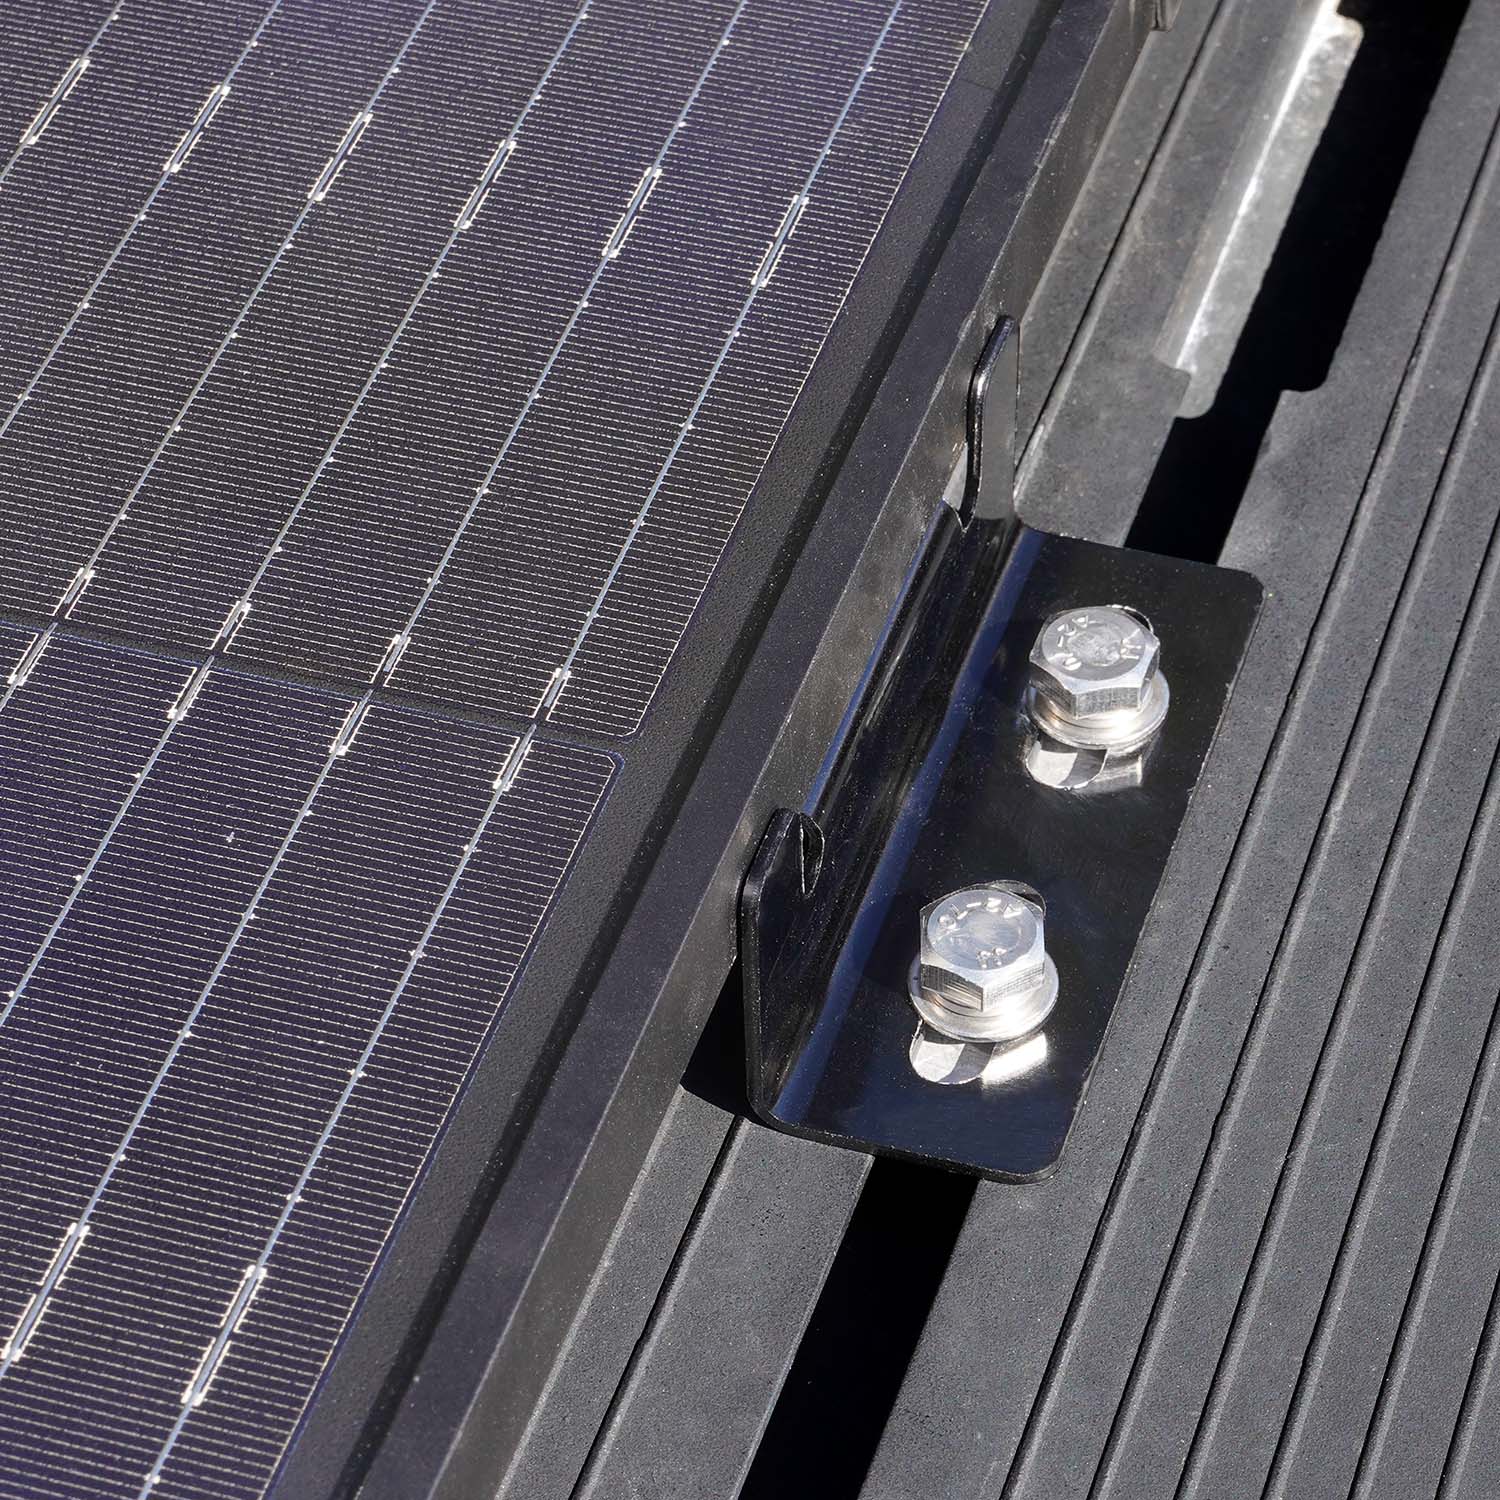 How solar panel security screws enhance solar panel durability